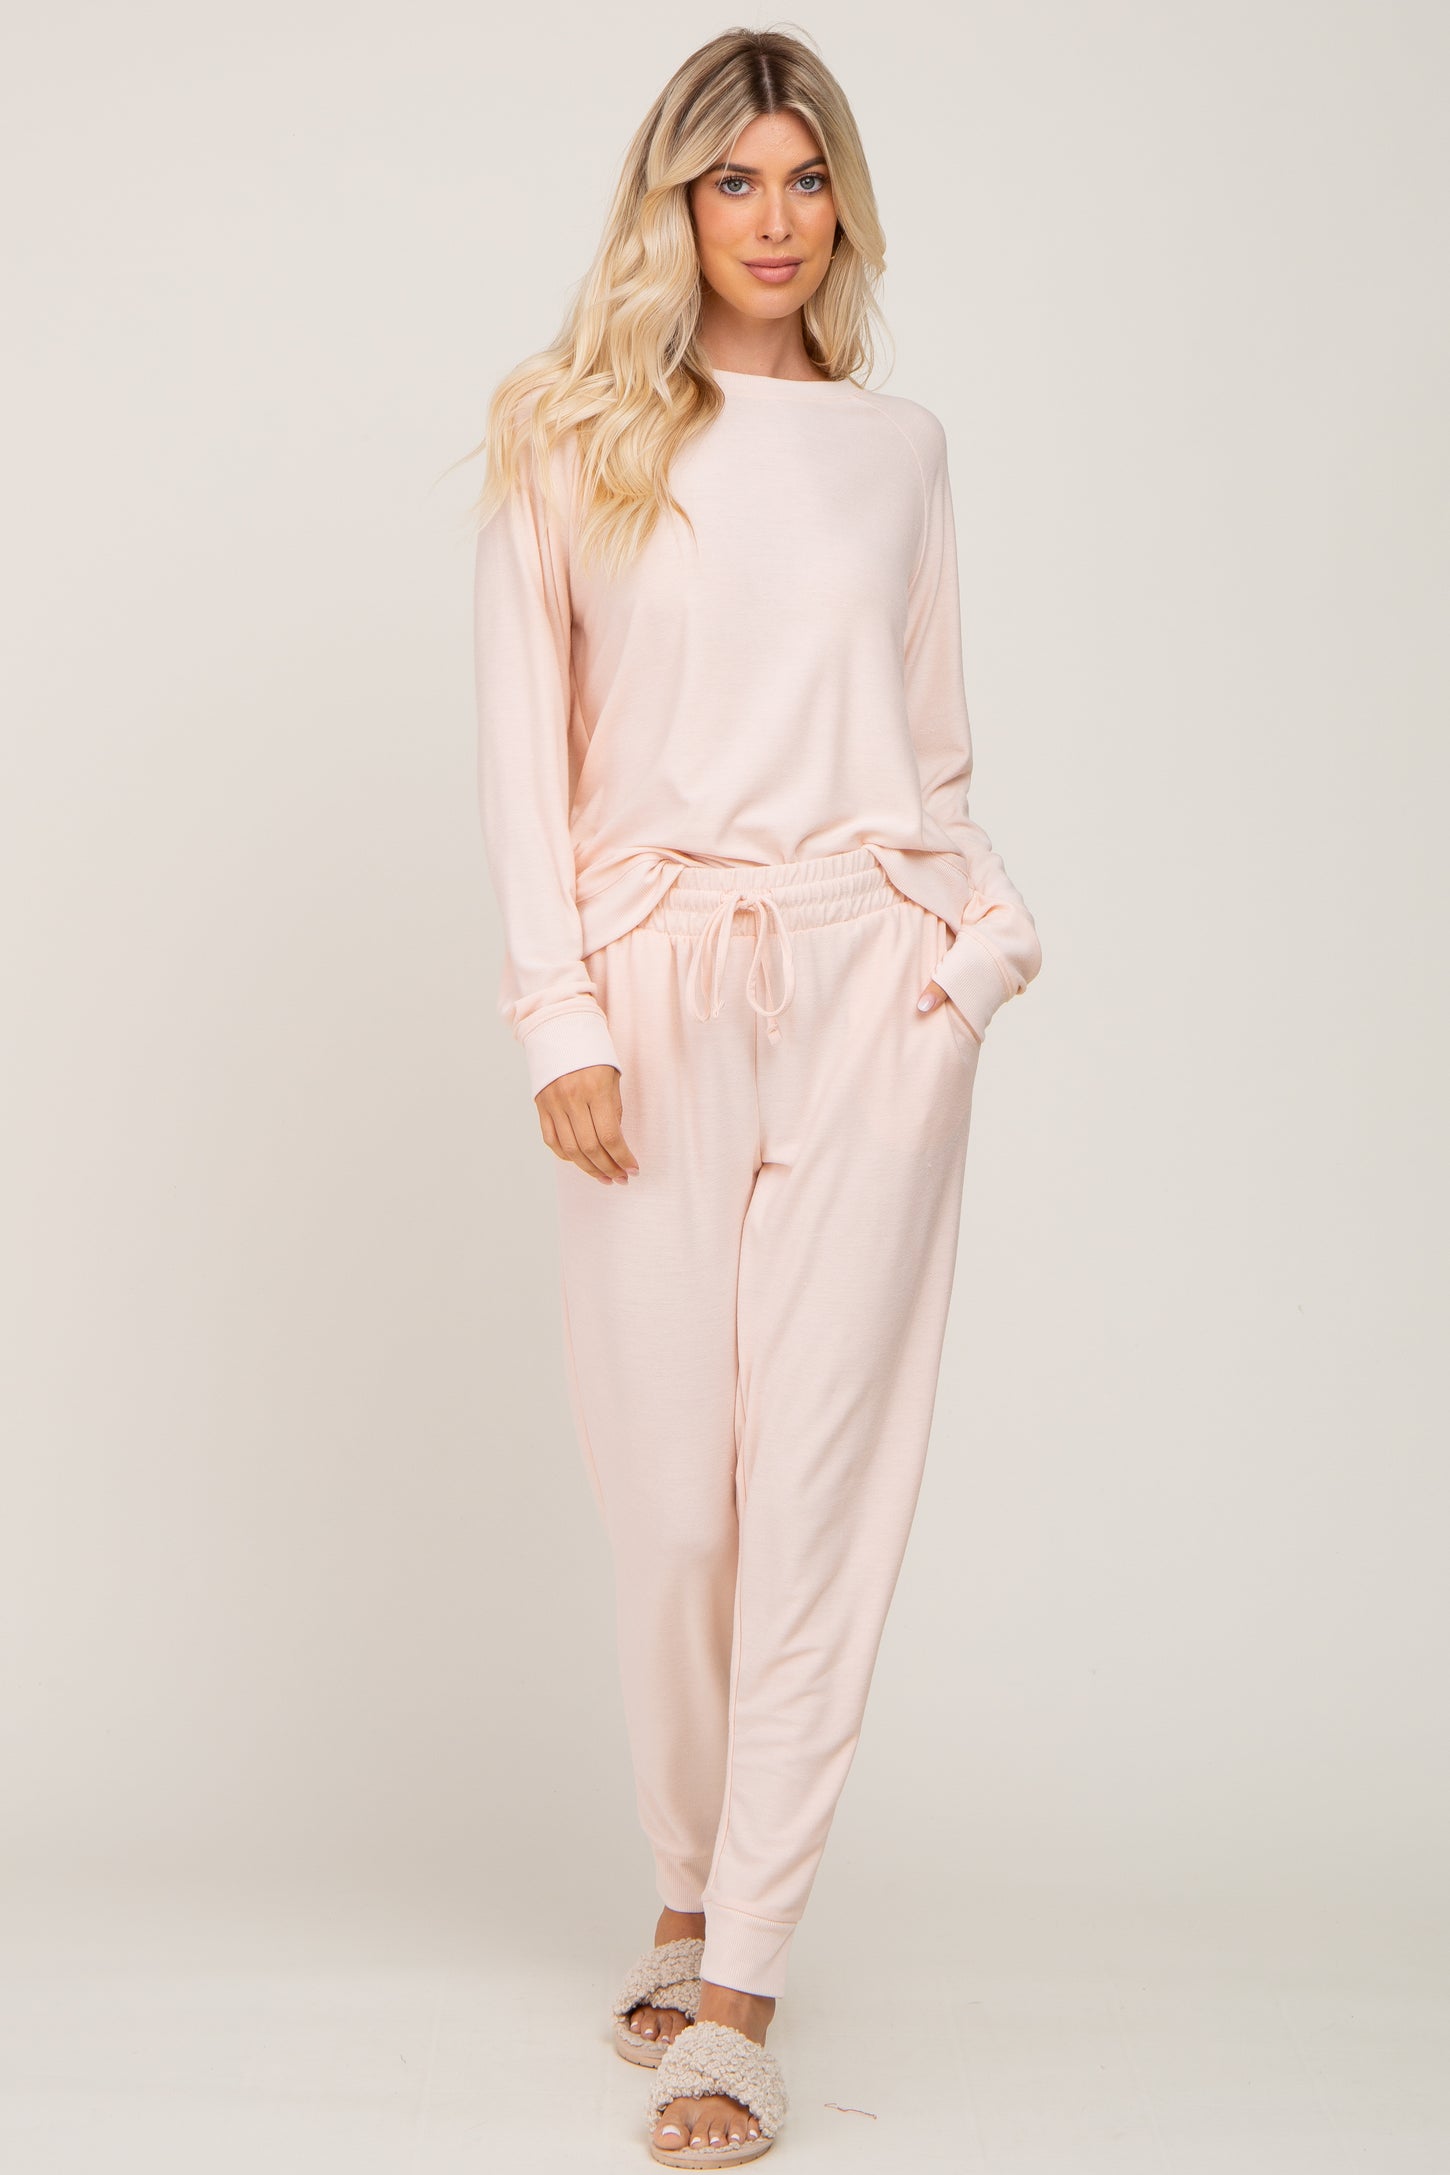 Light Pink Soft Knit Long Sleeve Set– PinkBlush